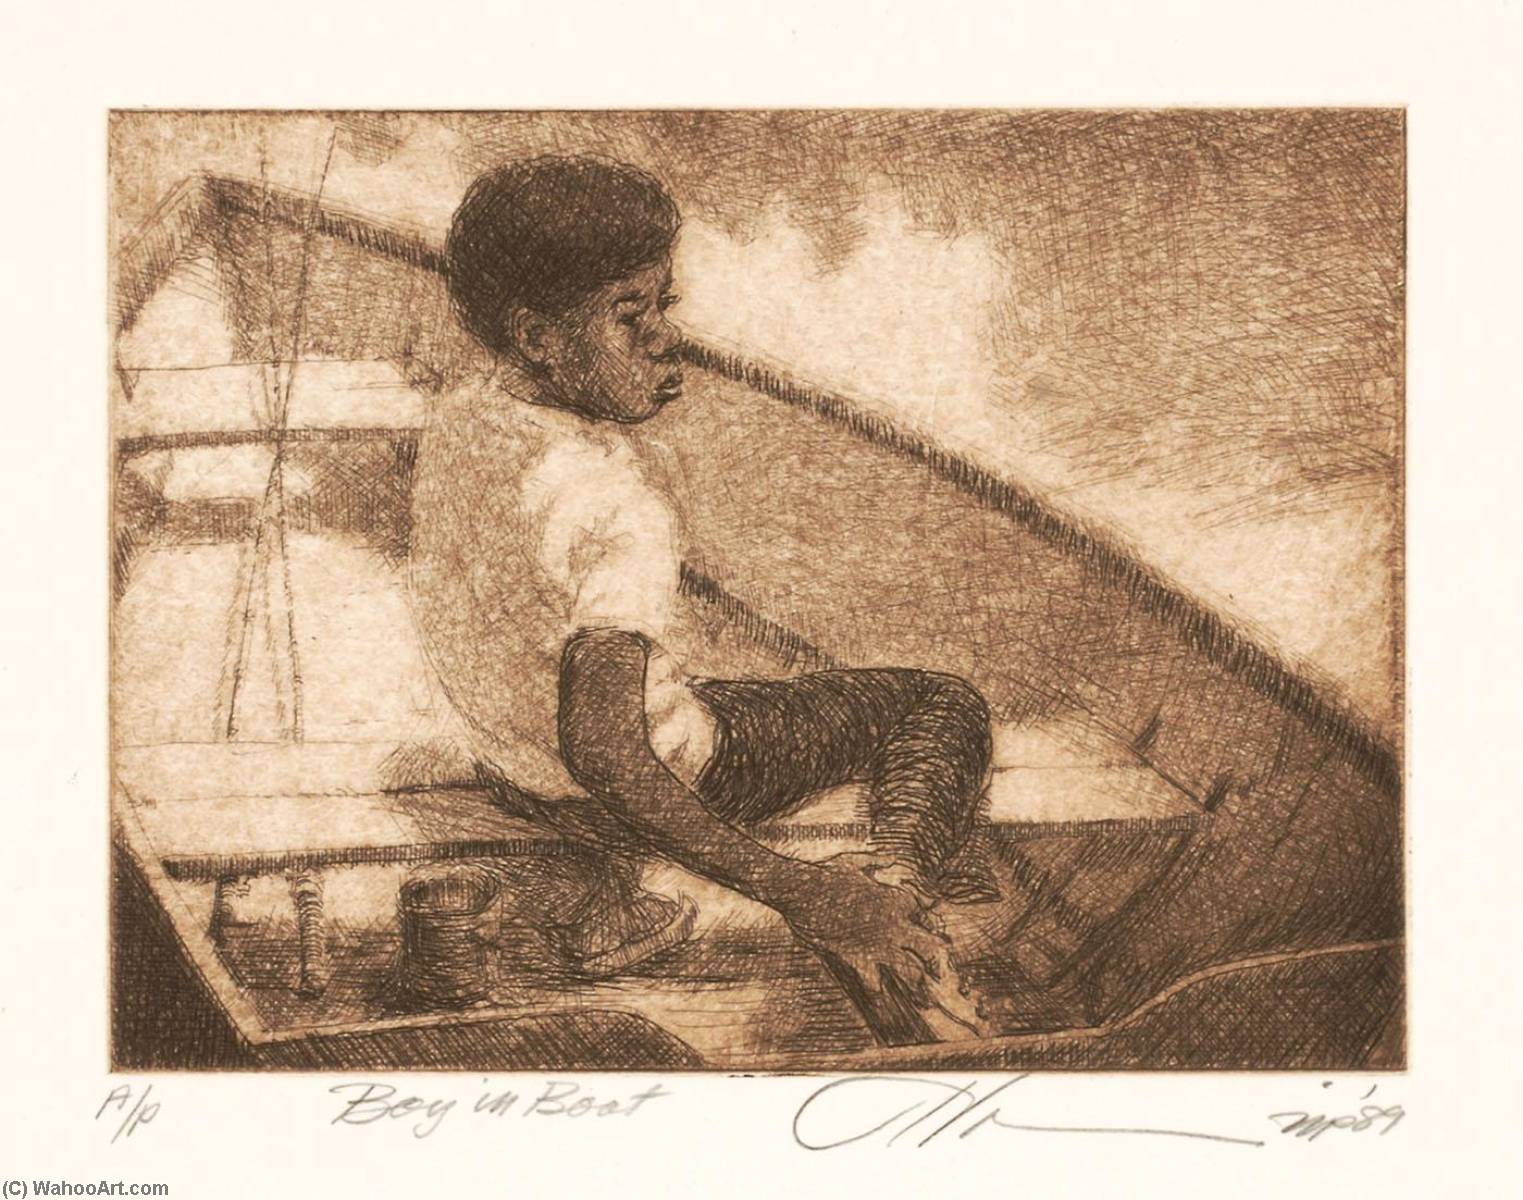 WikiOO.org - Encyclopedia of Fine Arts - Lukisan, Artwork Joseph Holston - Boy in Boat